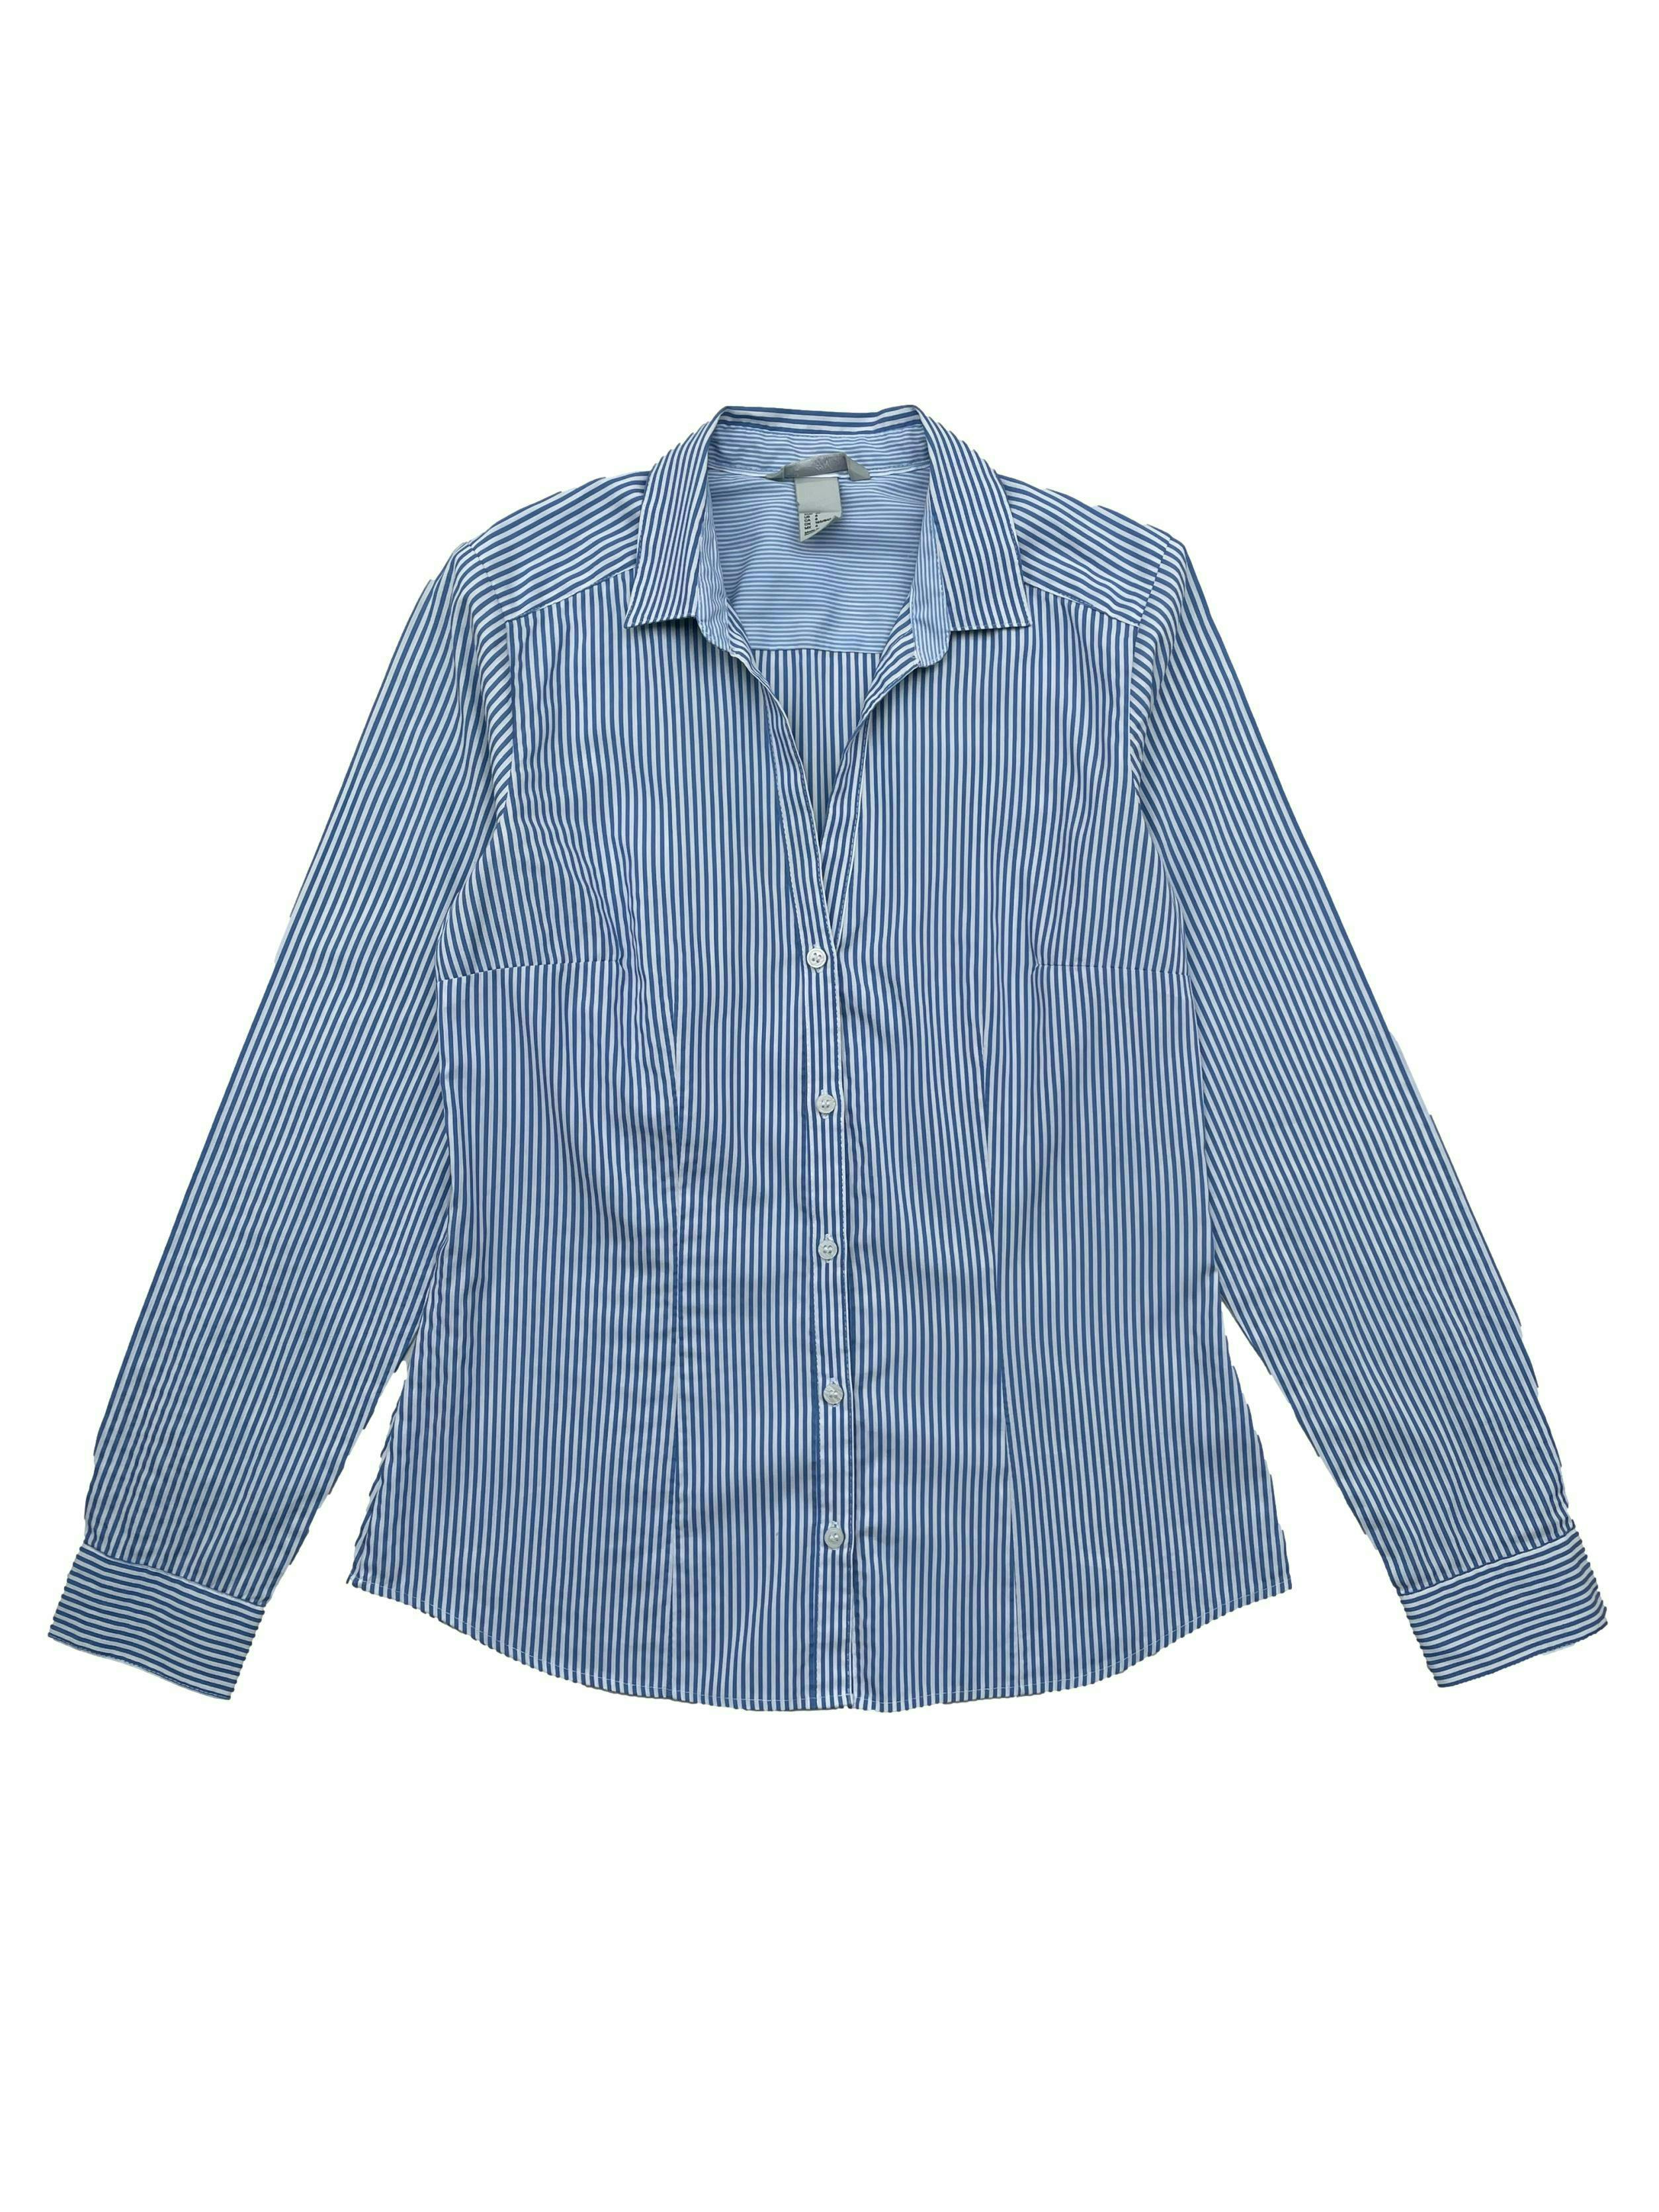 Blusa H&M a rayas en blanco y azul,  cuello camisero, pinzas en busto y espalda, mangas largas. Busto 94cm, Largo 57cm.